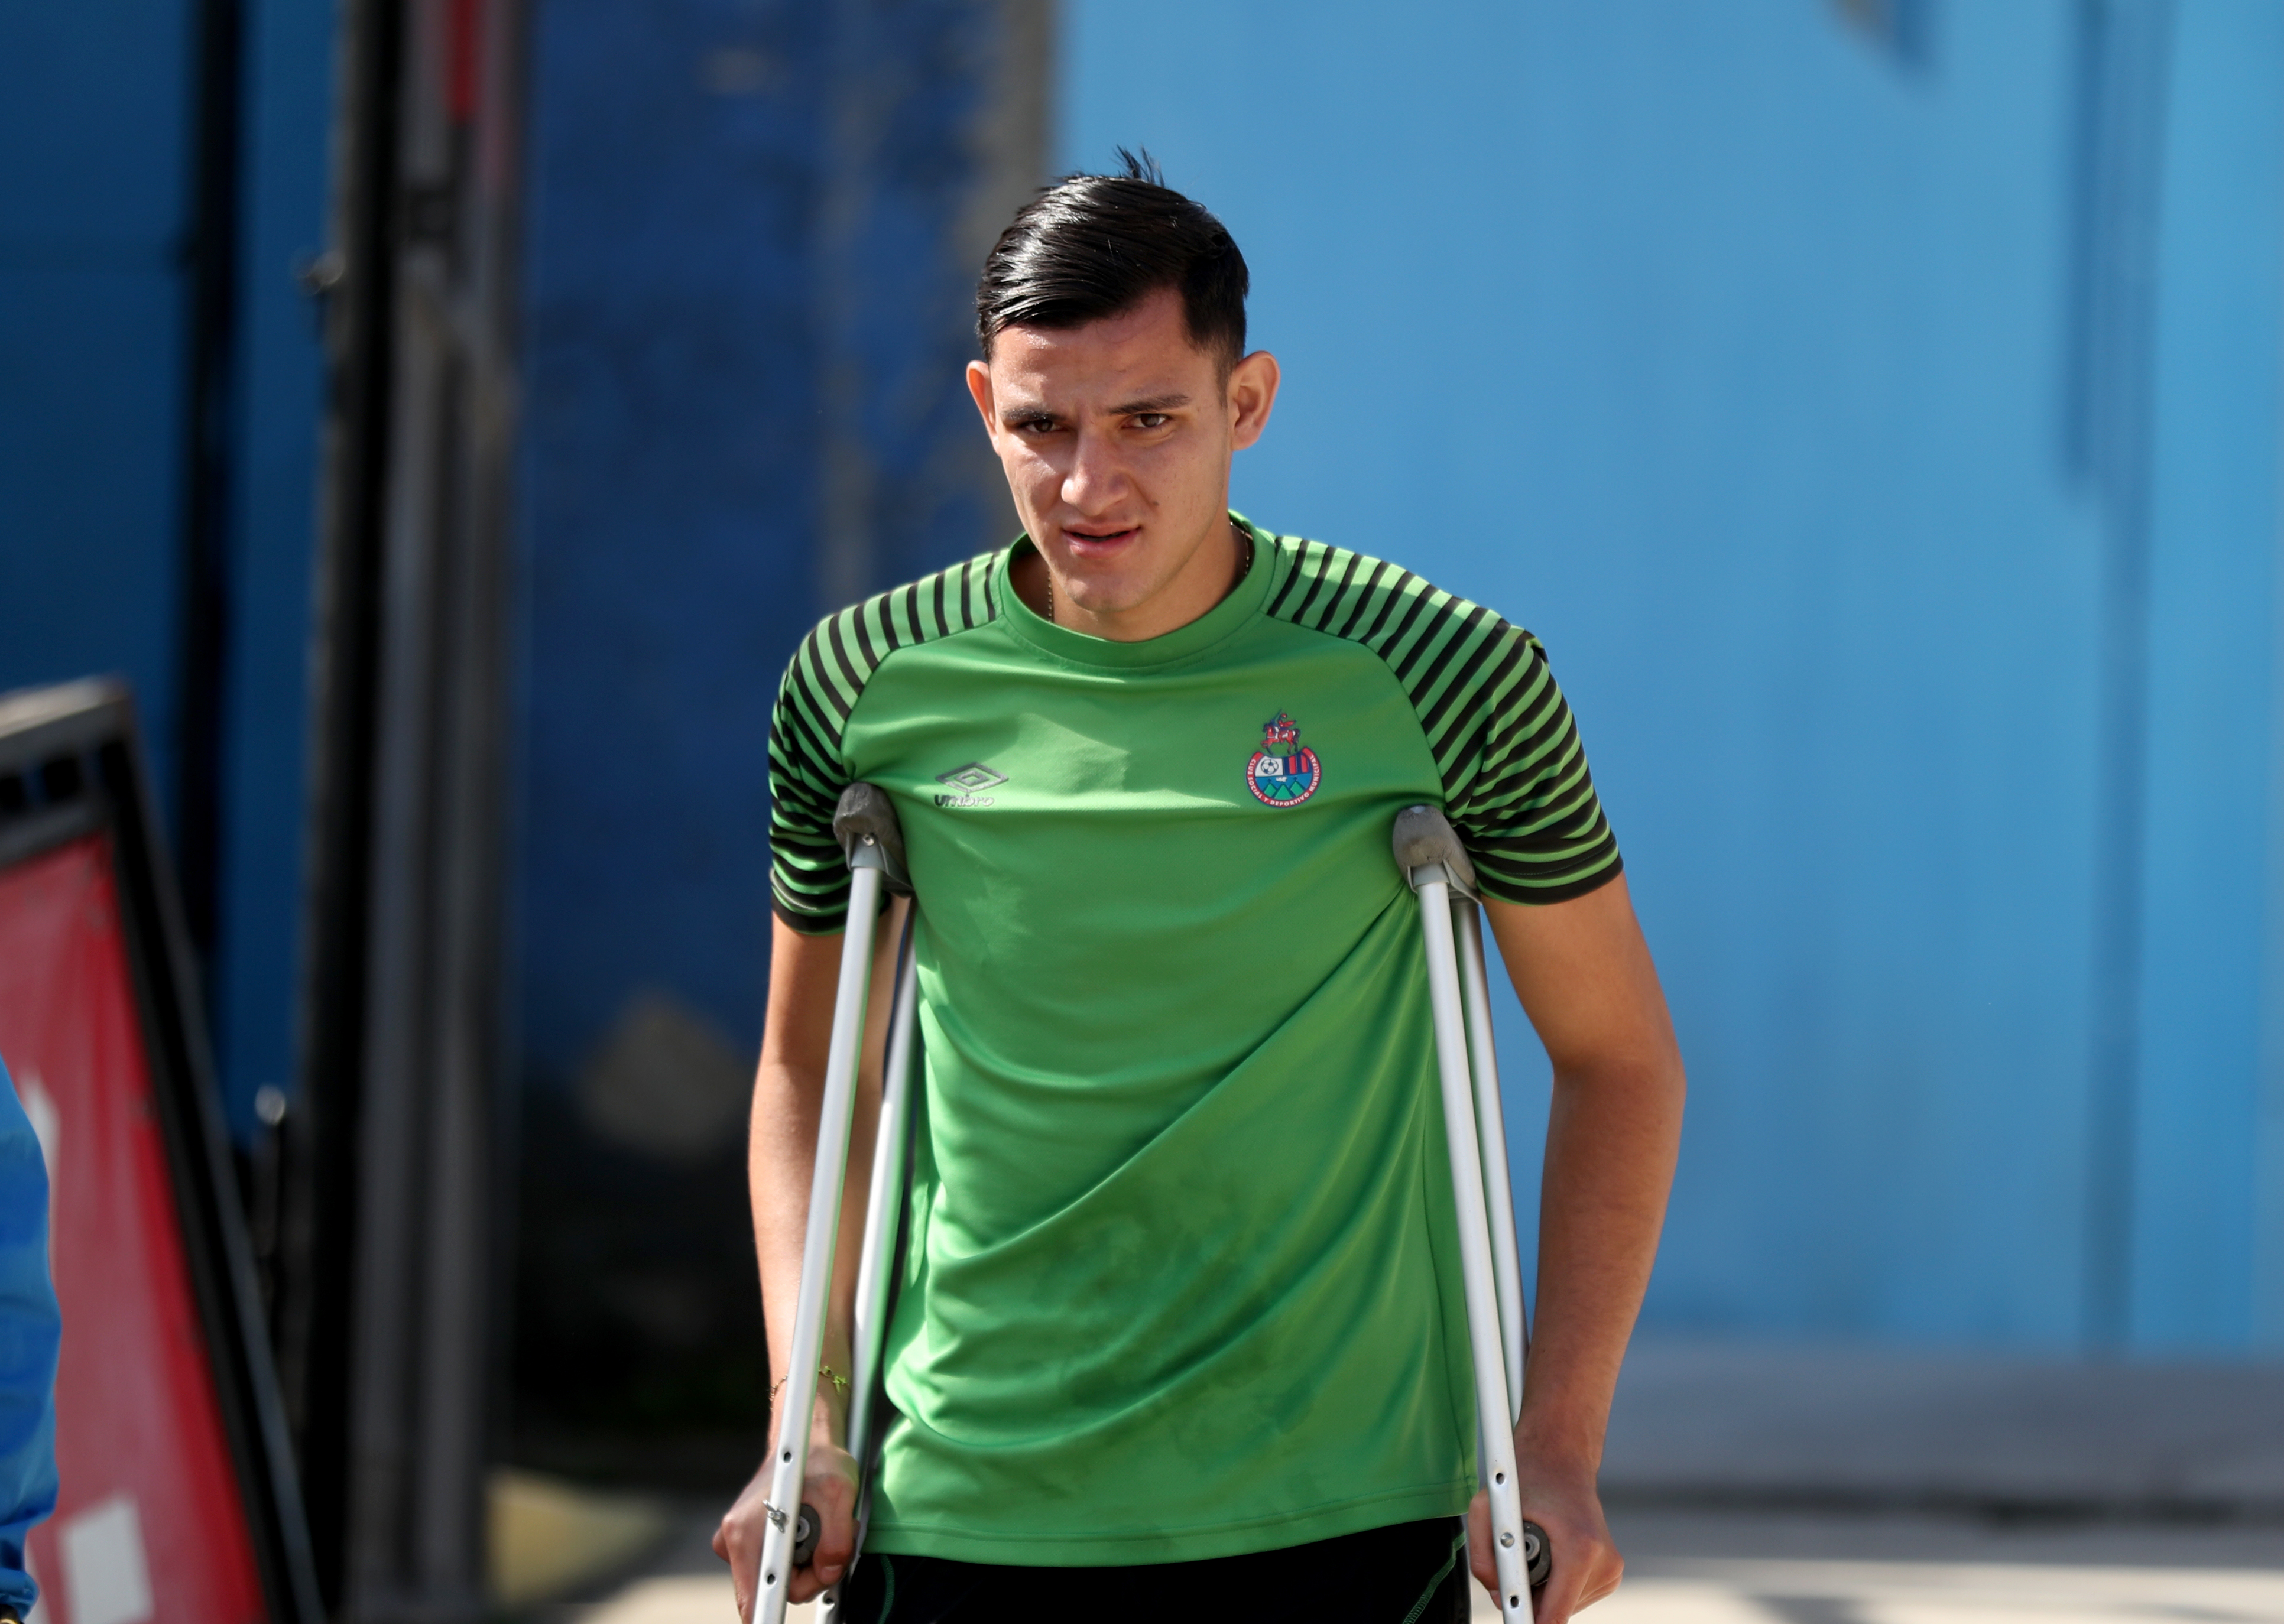 José Carlos Martínez se recupera con motivación de una lesión de tibia. (Foto Prensa Libre: Carlos Vicente)